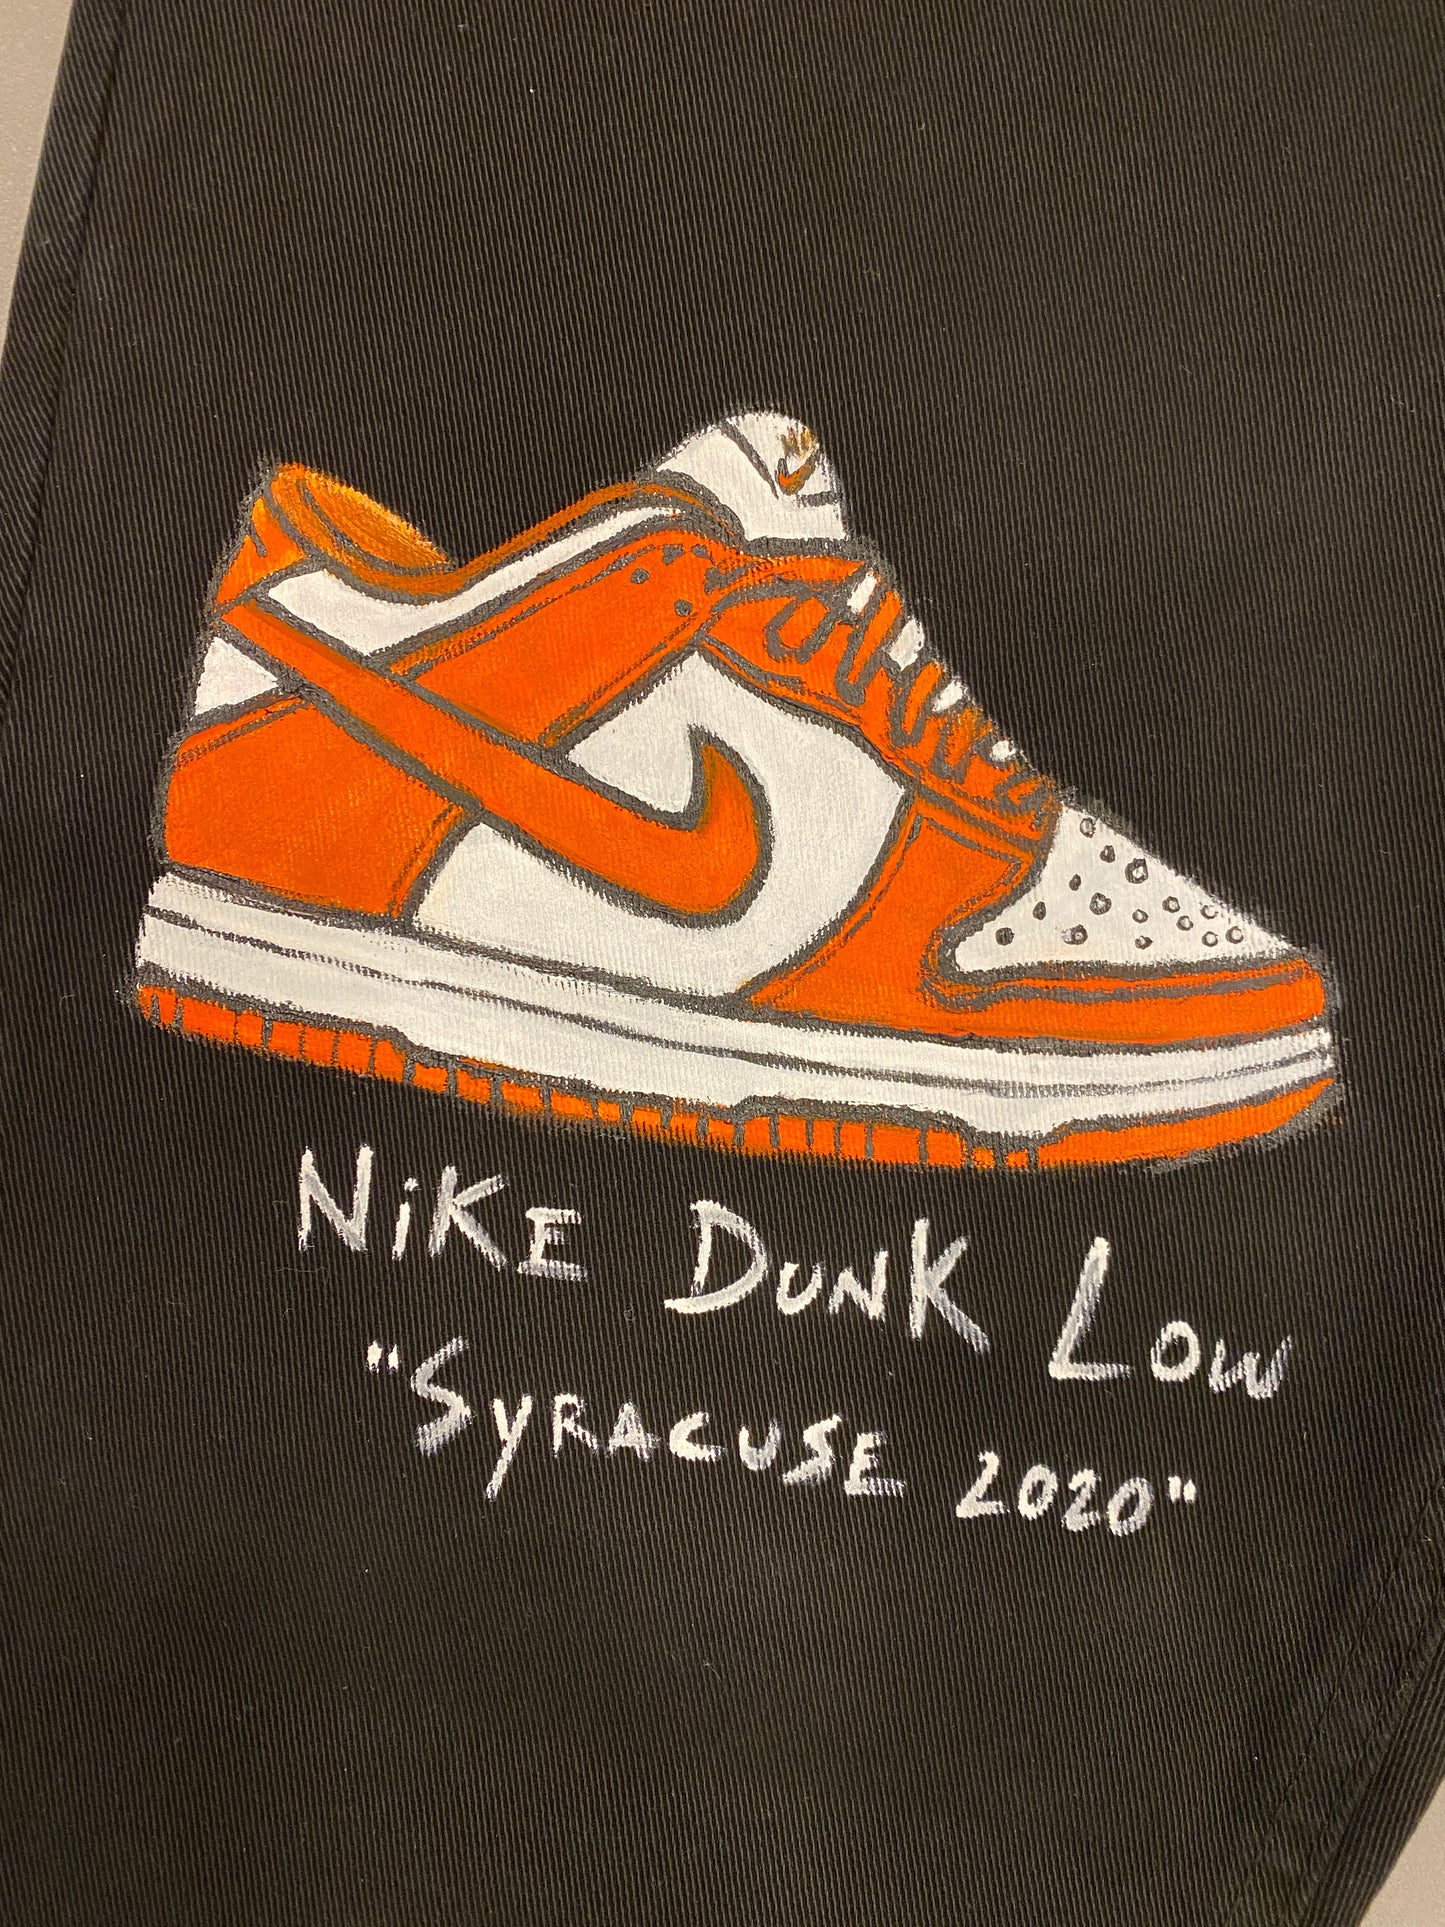 Nike Dunk jeans custom